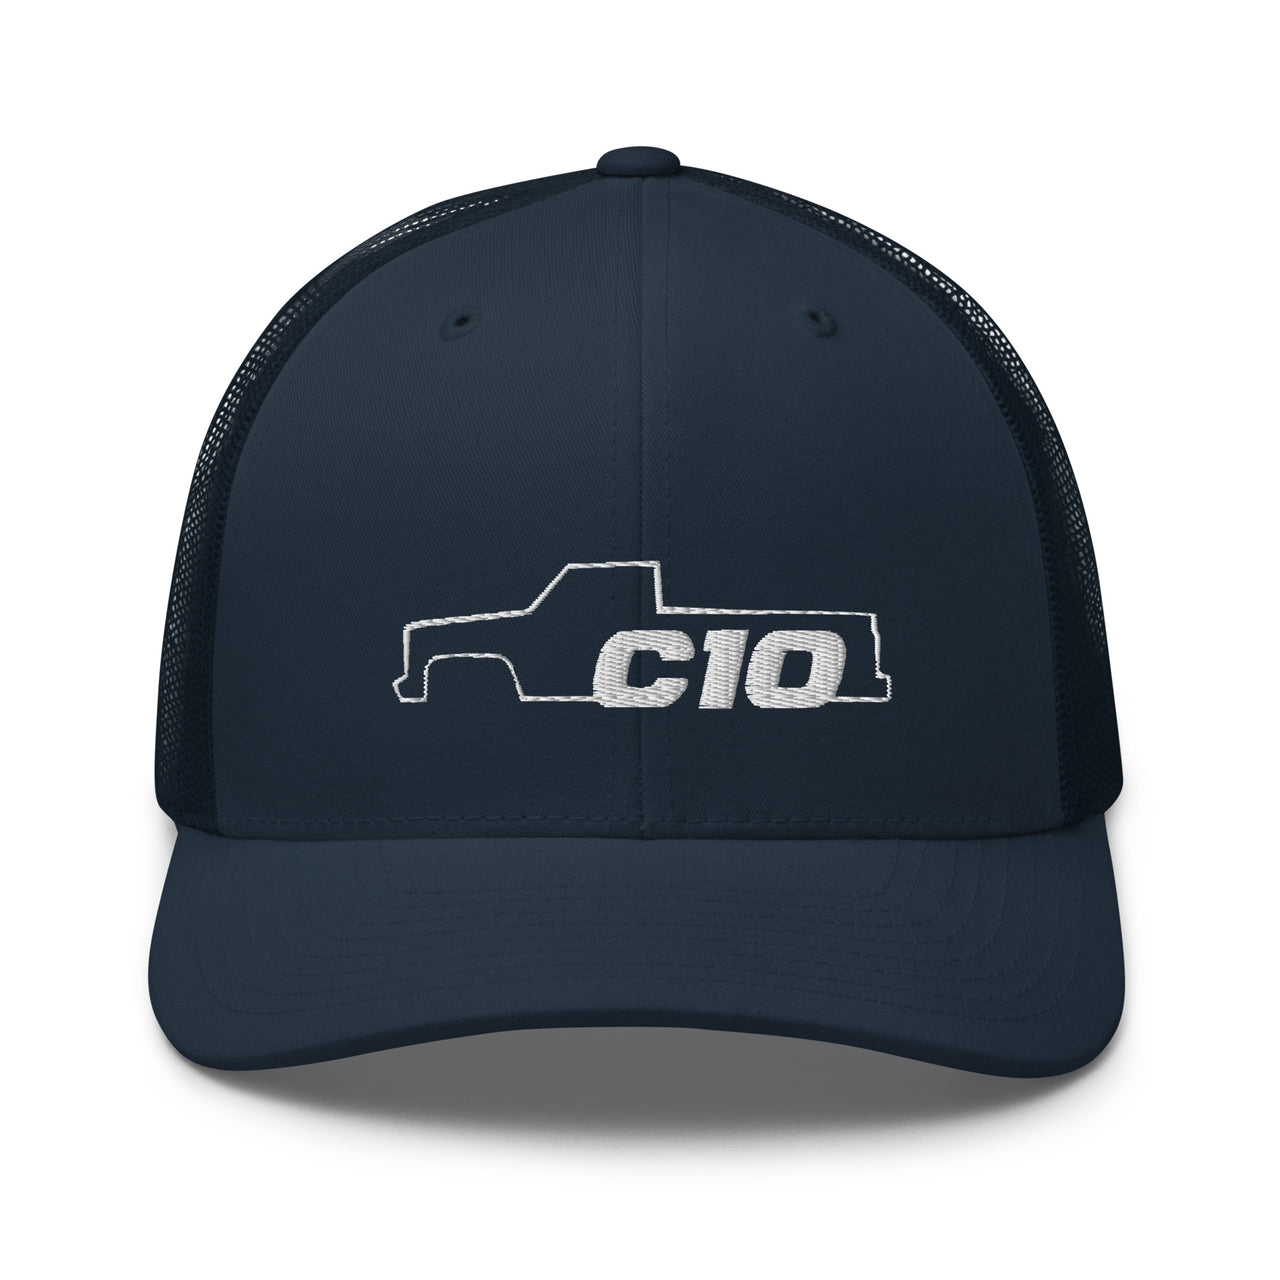 C10 Trucker hat in navy